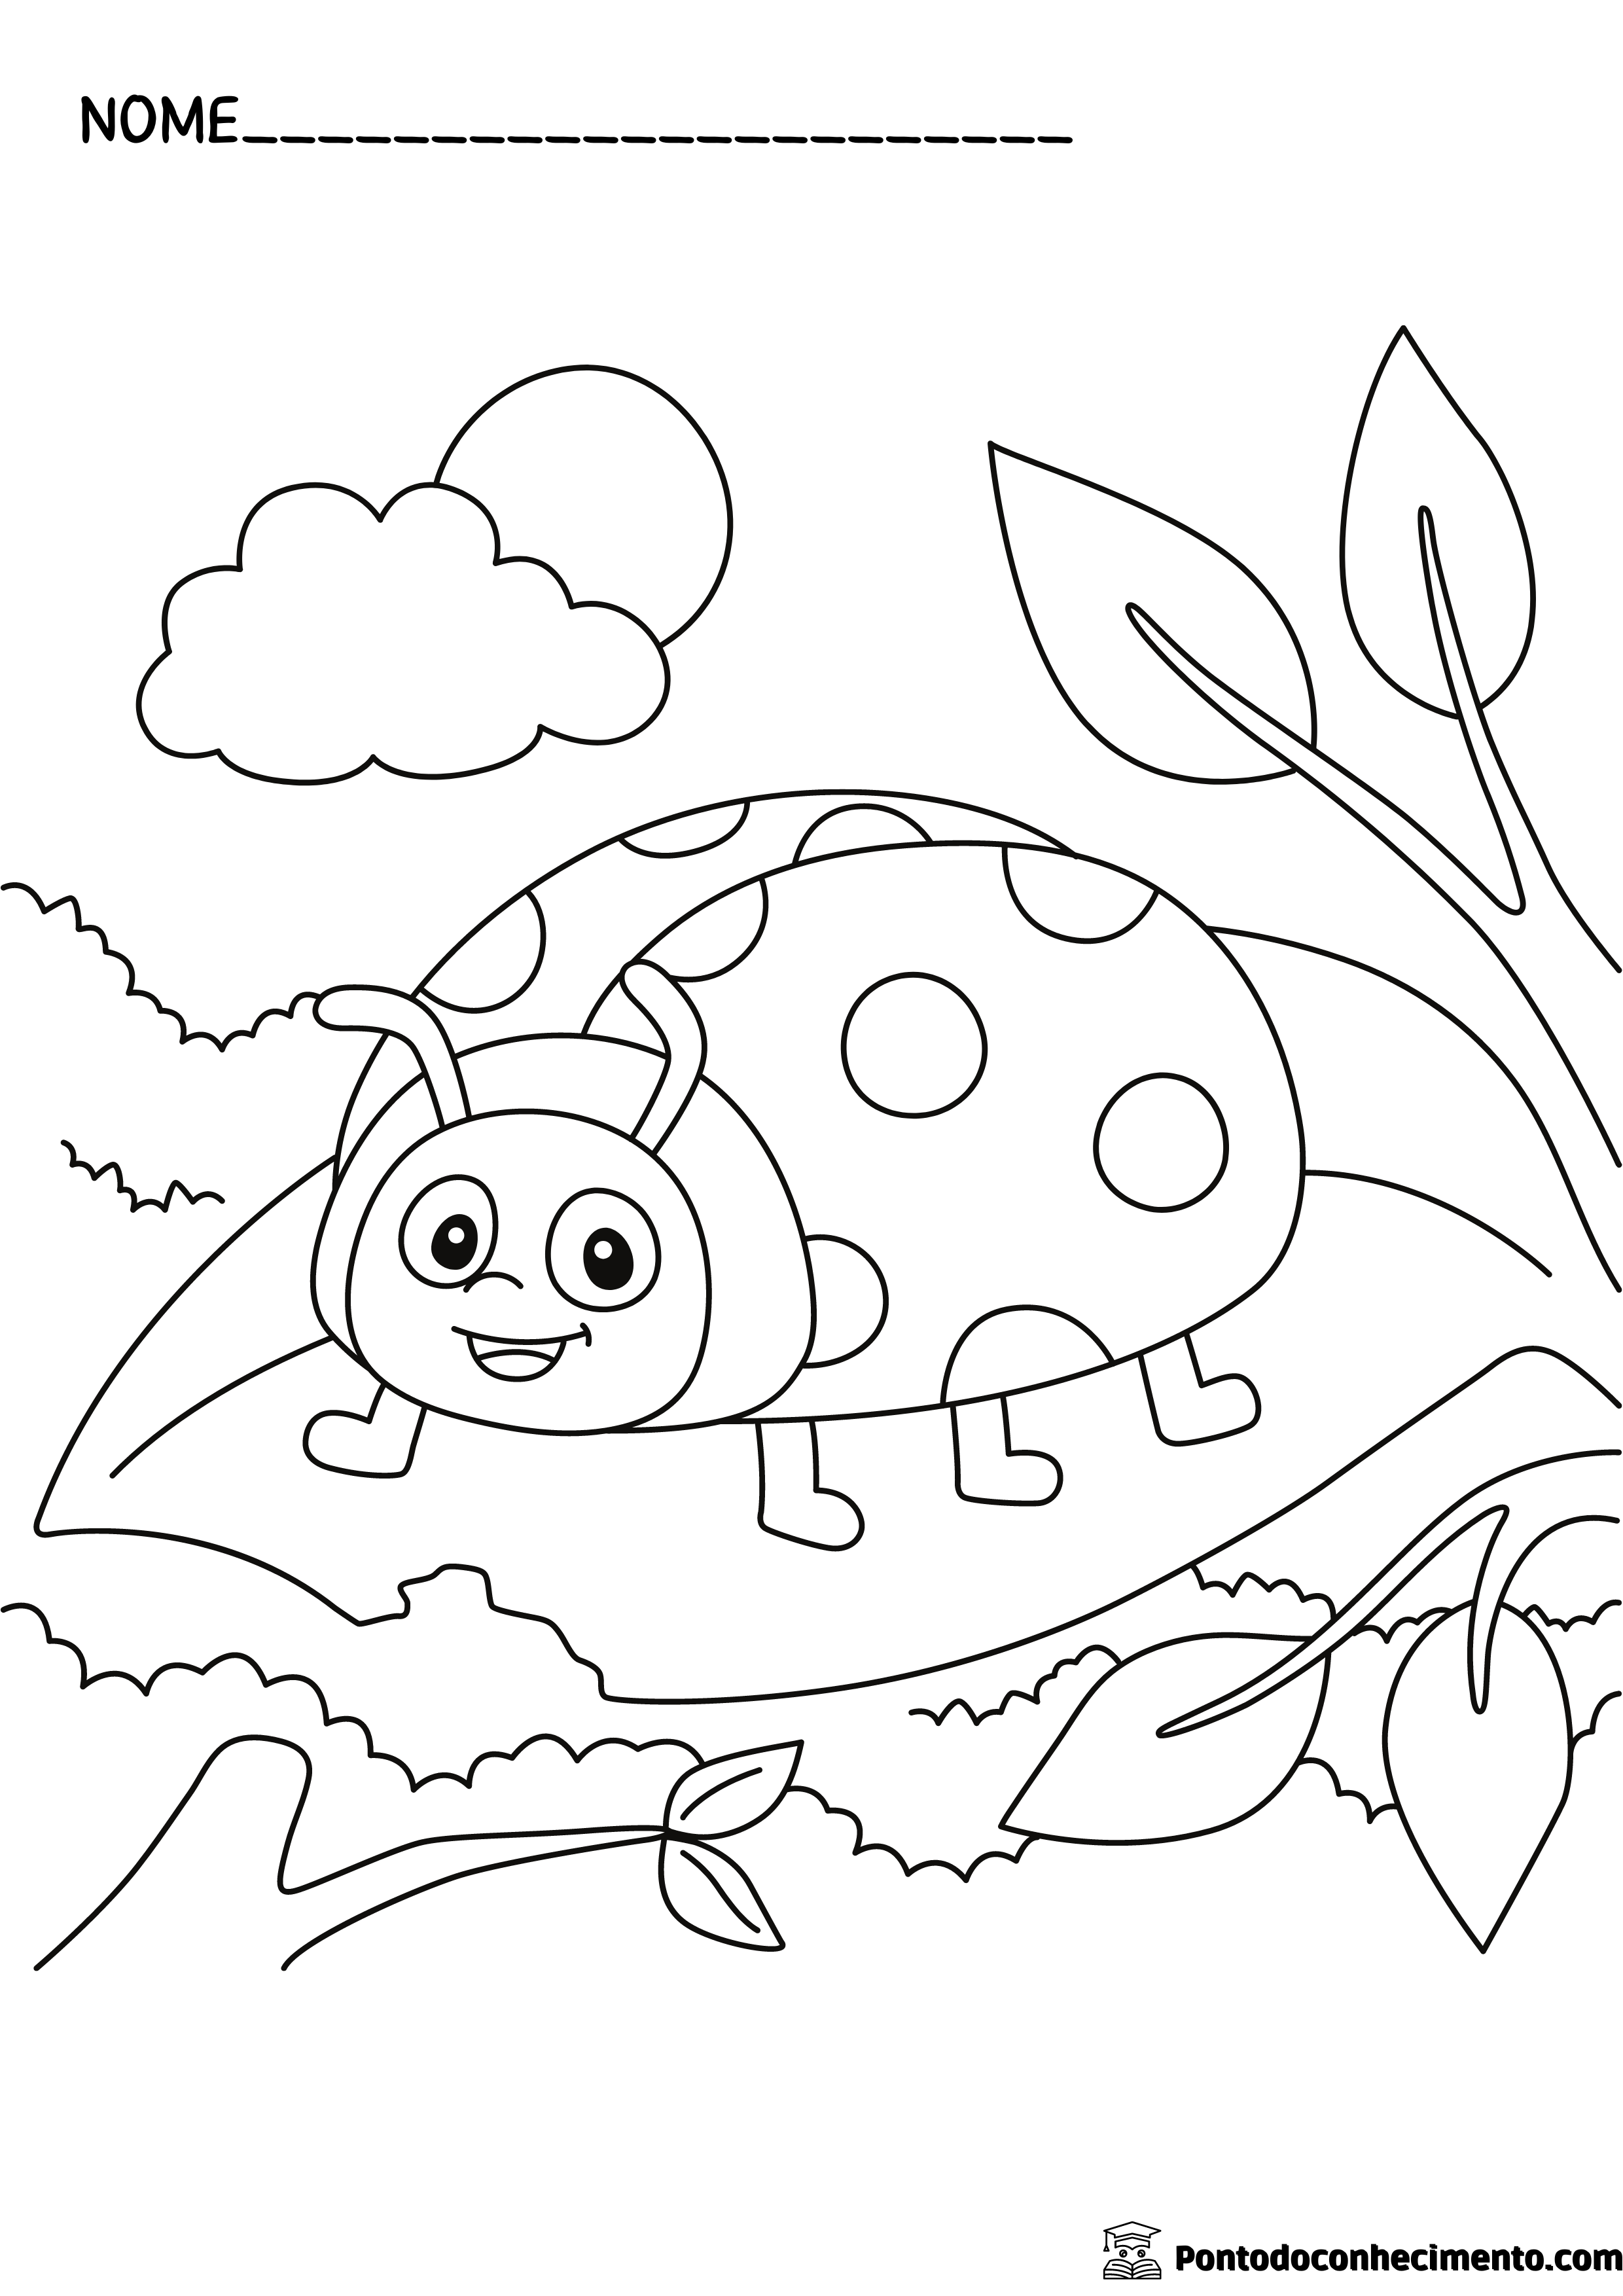 Desenhos infantis para colorir: joaninha